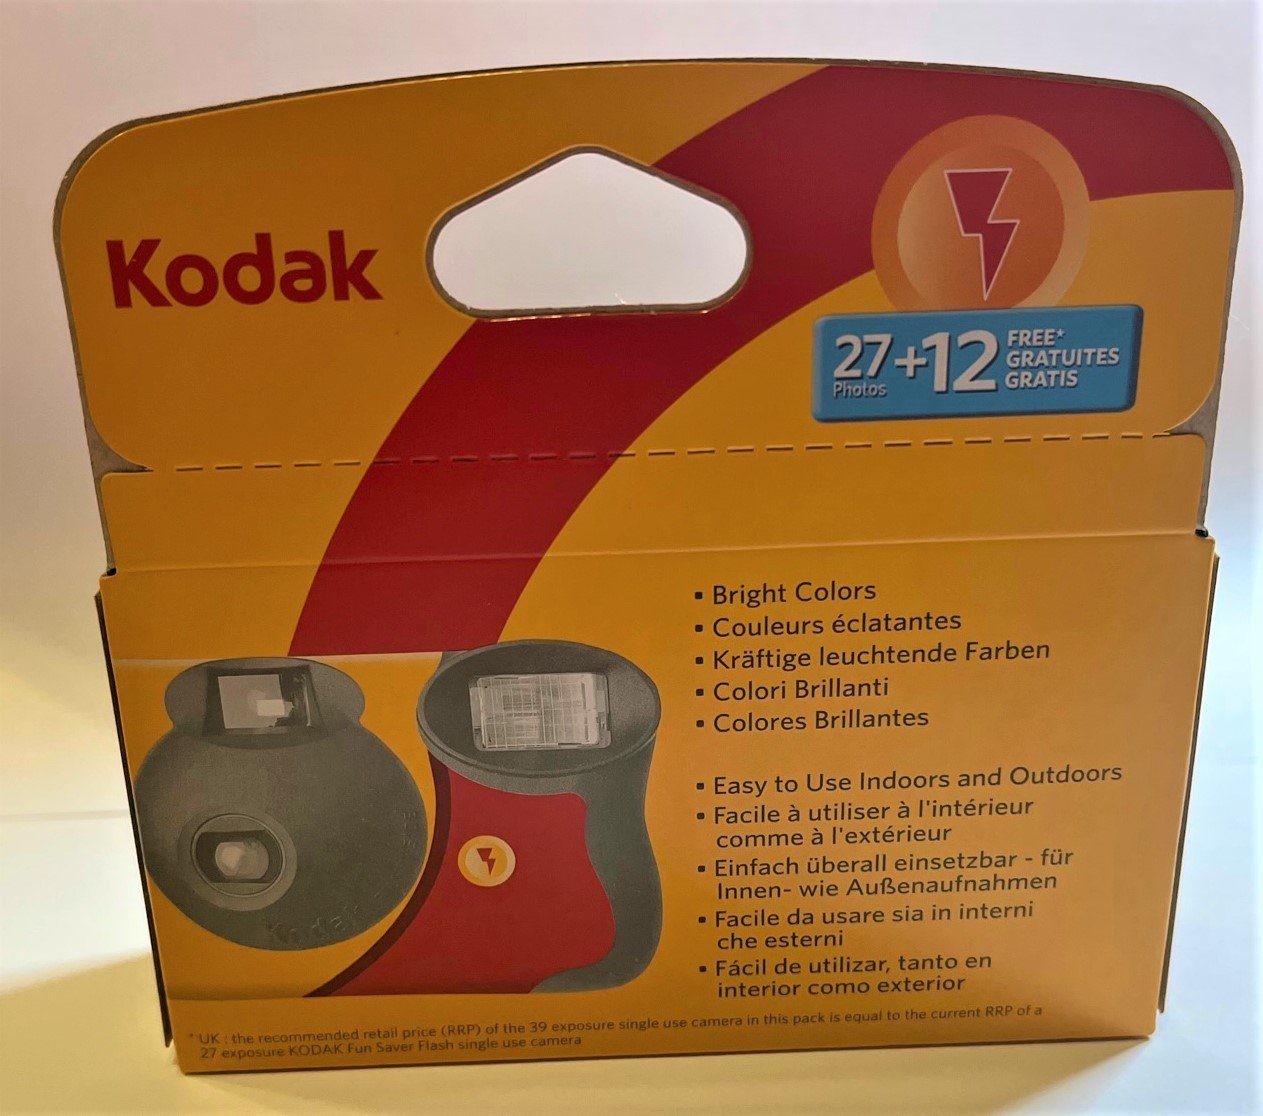 Saver x 27+12 Fun Einwegkamera Kodak Kodak 800 ISo 3 Einwegkamera